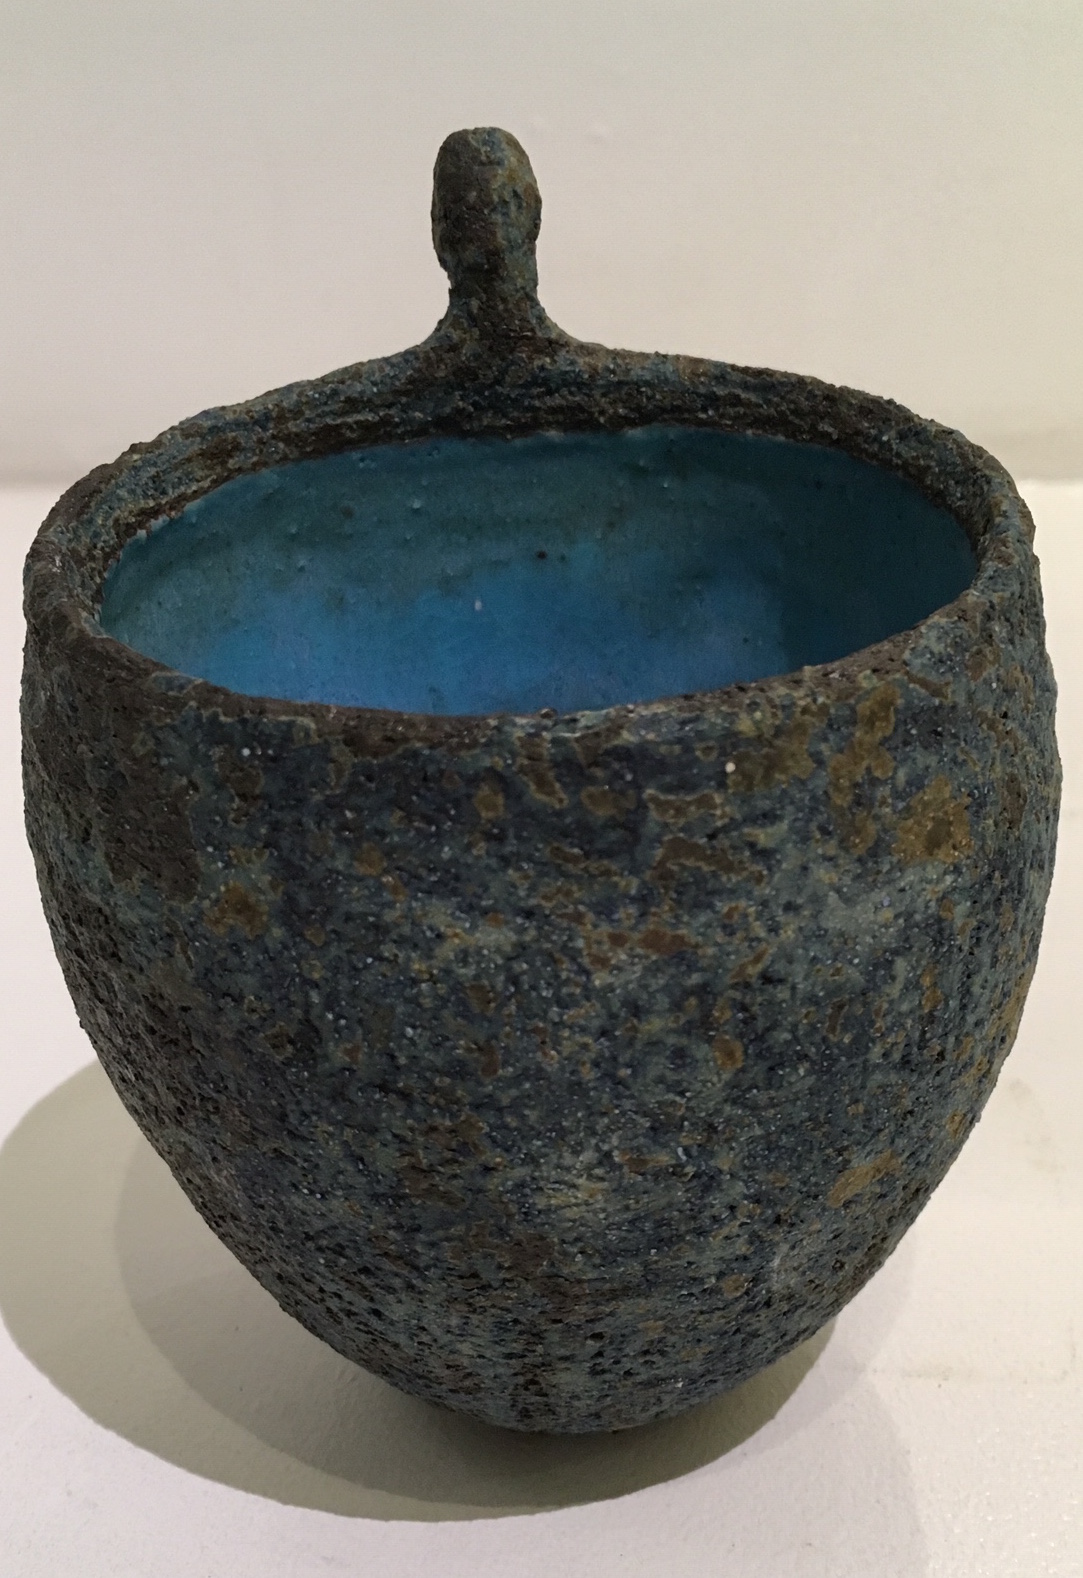  Title: Figure Vessel Medium: Ceramic Stoneware Height: 13cm  